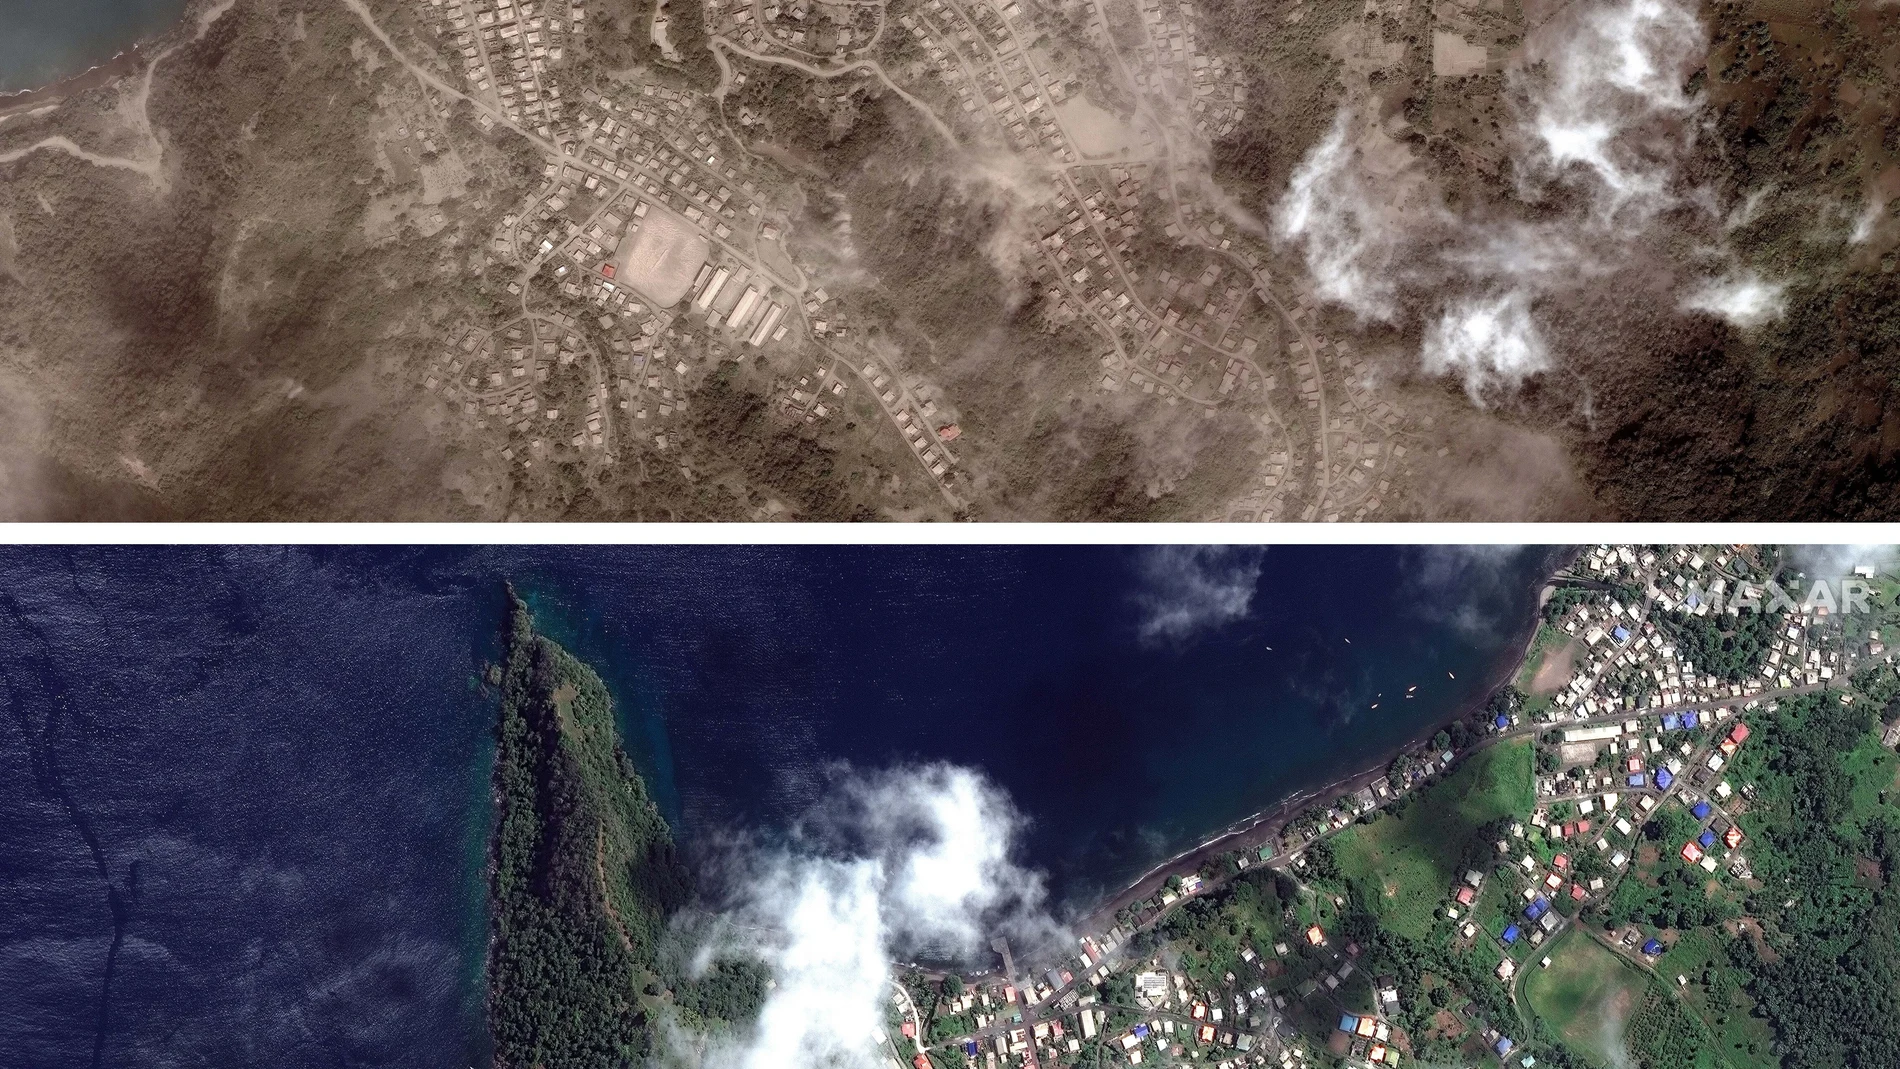 Combinación de dos fotos con imágenes proporcionadas por Maxar Technologies que muestra, arriba, el paseo marítimo de Richmond Vale cubierto de ceniza volcánica, en Chateaubelair, San Vicente un día después de otra erupción del volcán La Soufriere